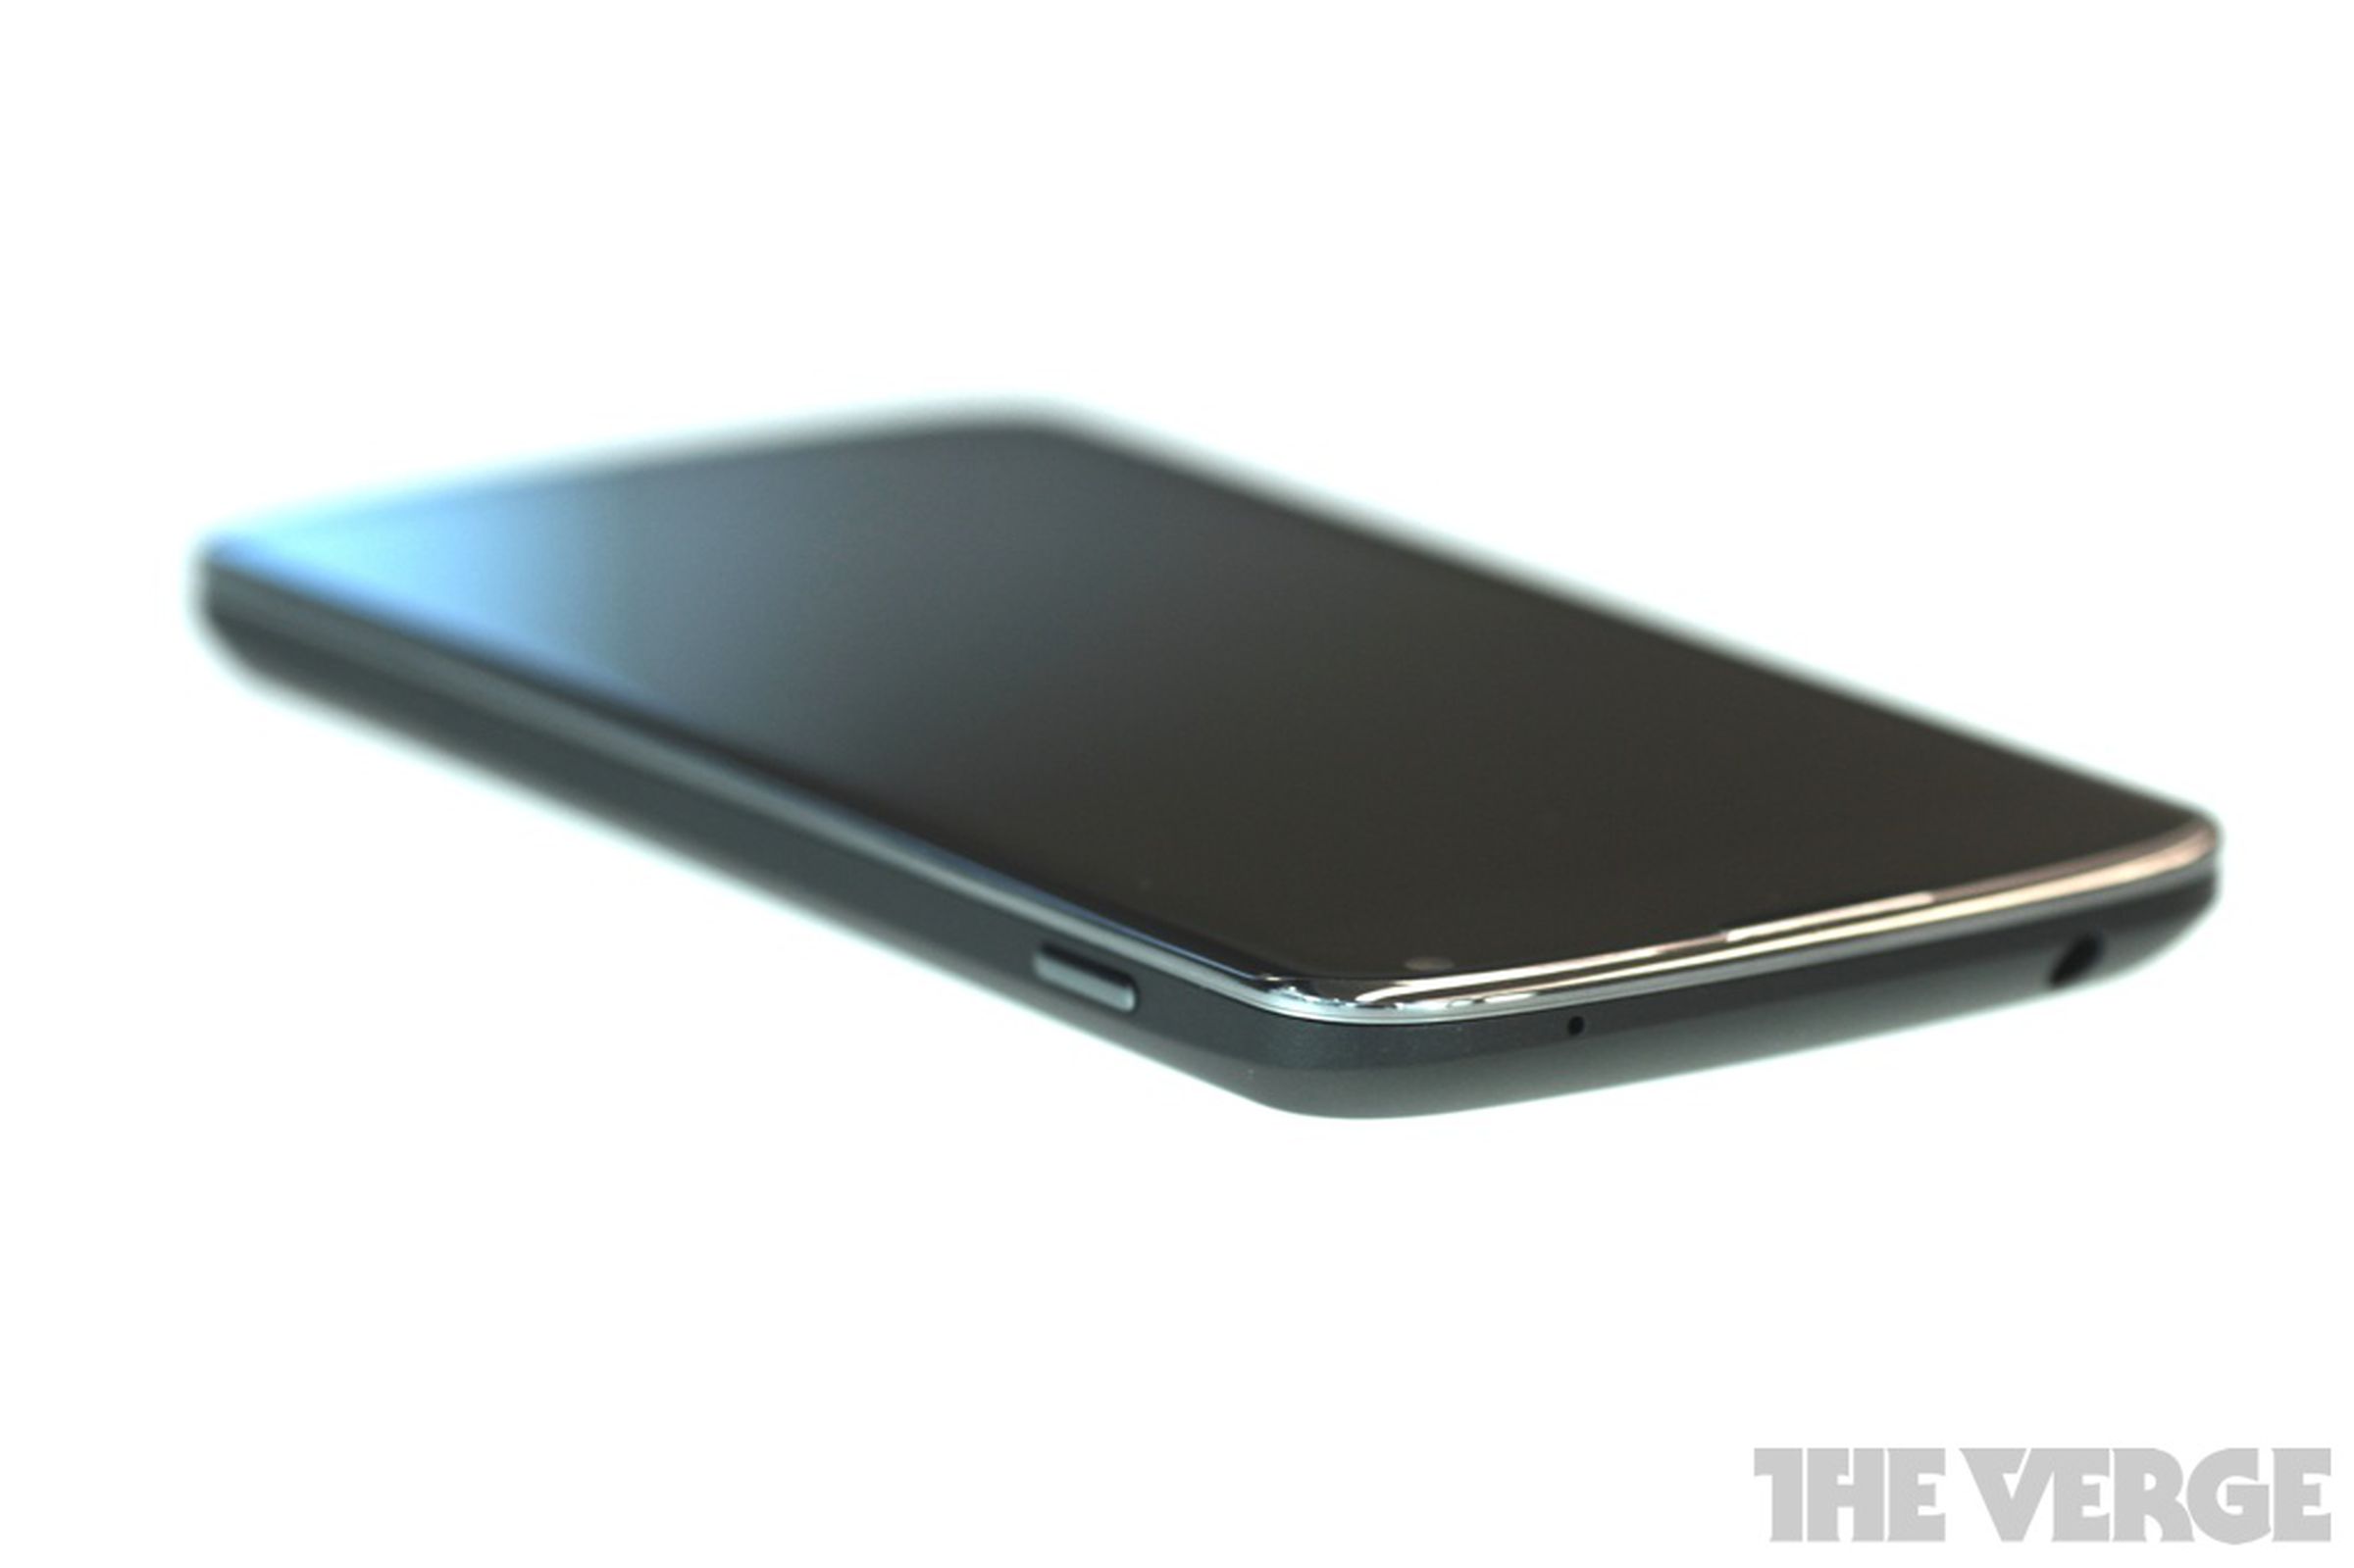 Nexus 4 hands-on photos